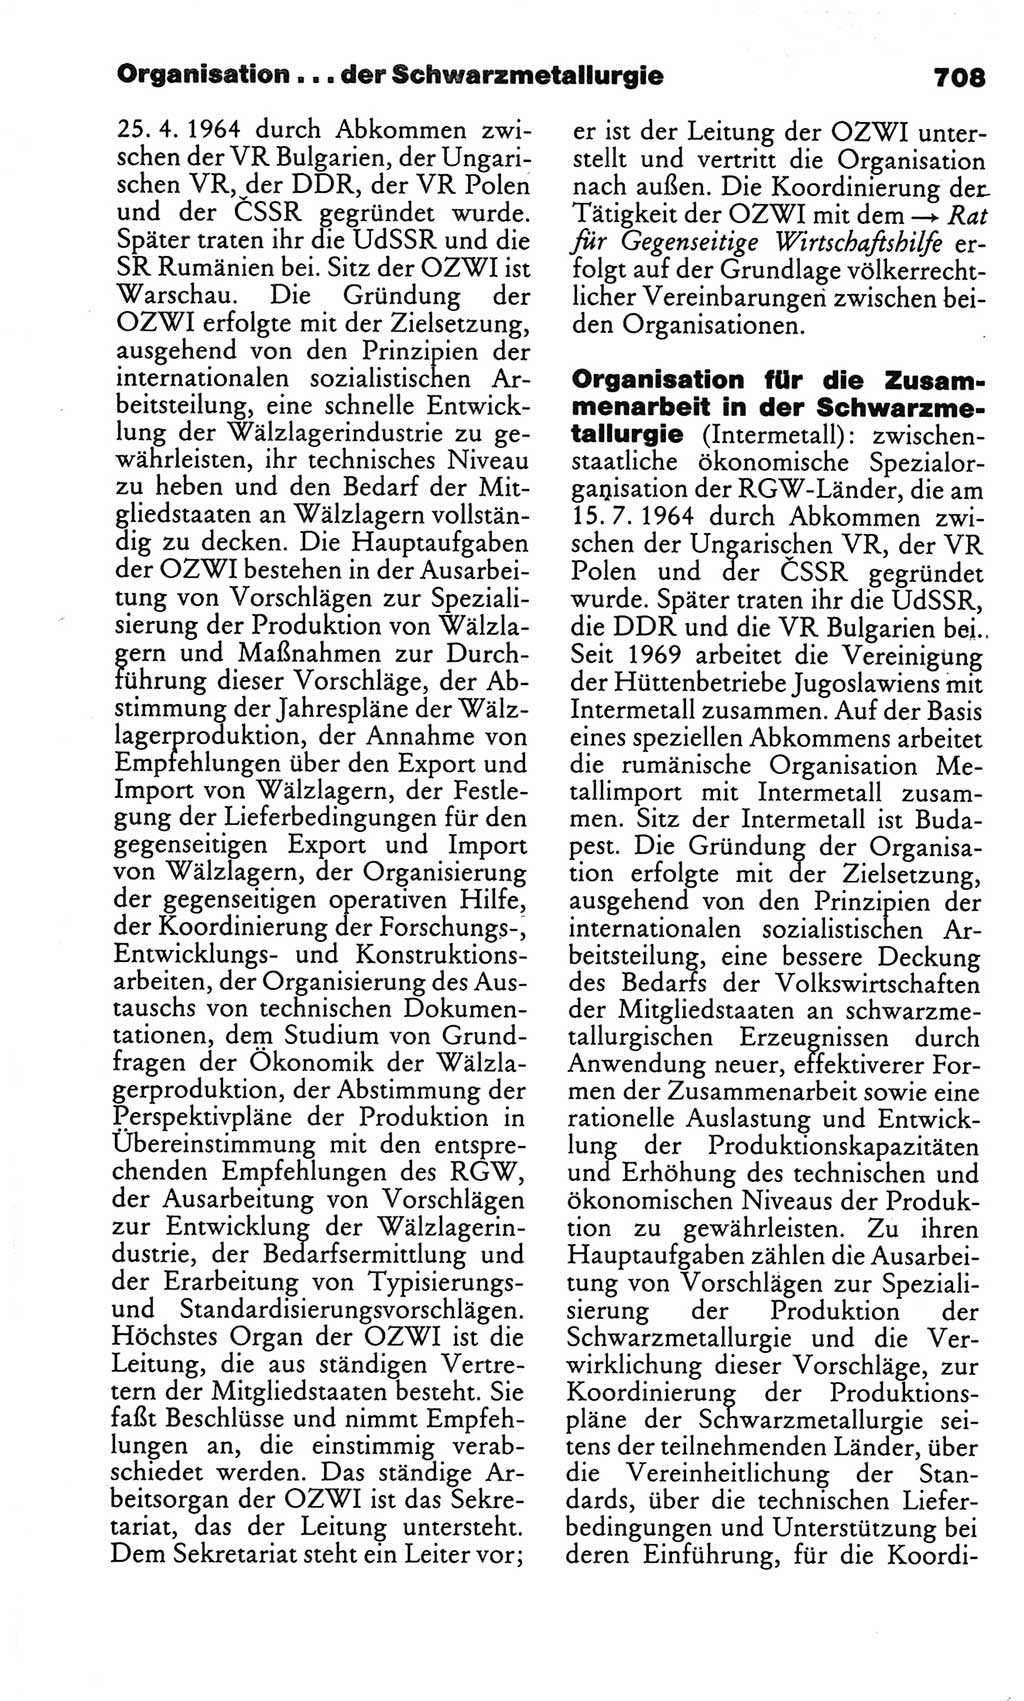 Kleines politisches Wörterbuch [Deutsche Demokratische Republik (DDR)] 1986, Seite 708 (Kl. pol. Wb. DDR 1986, S. 708)